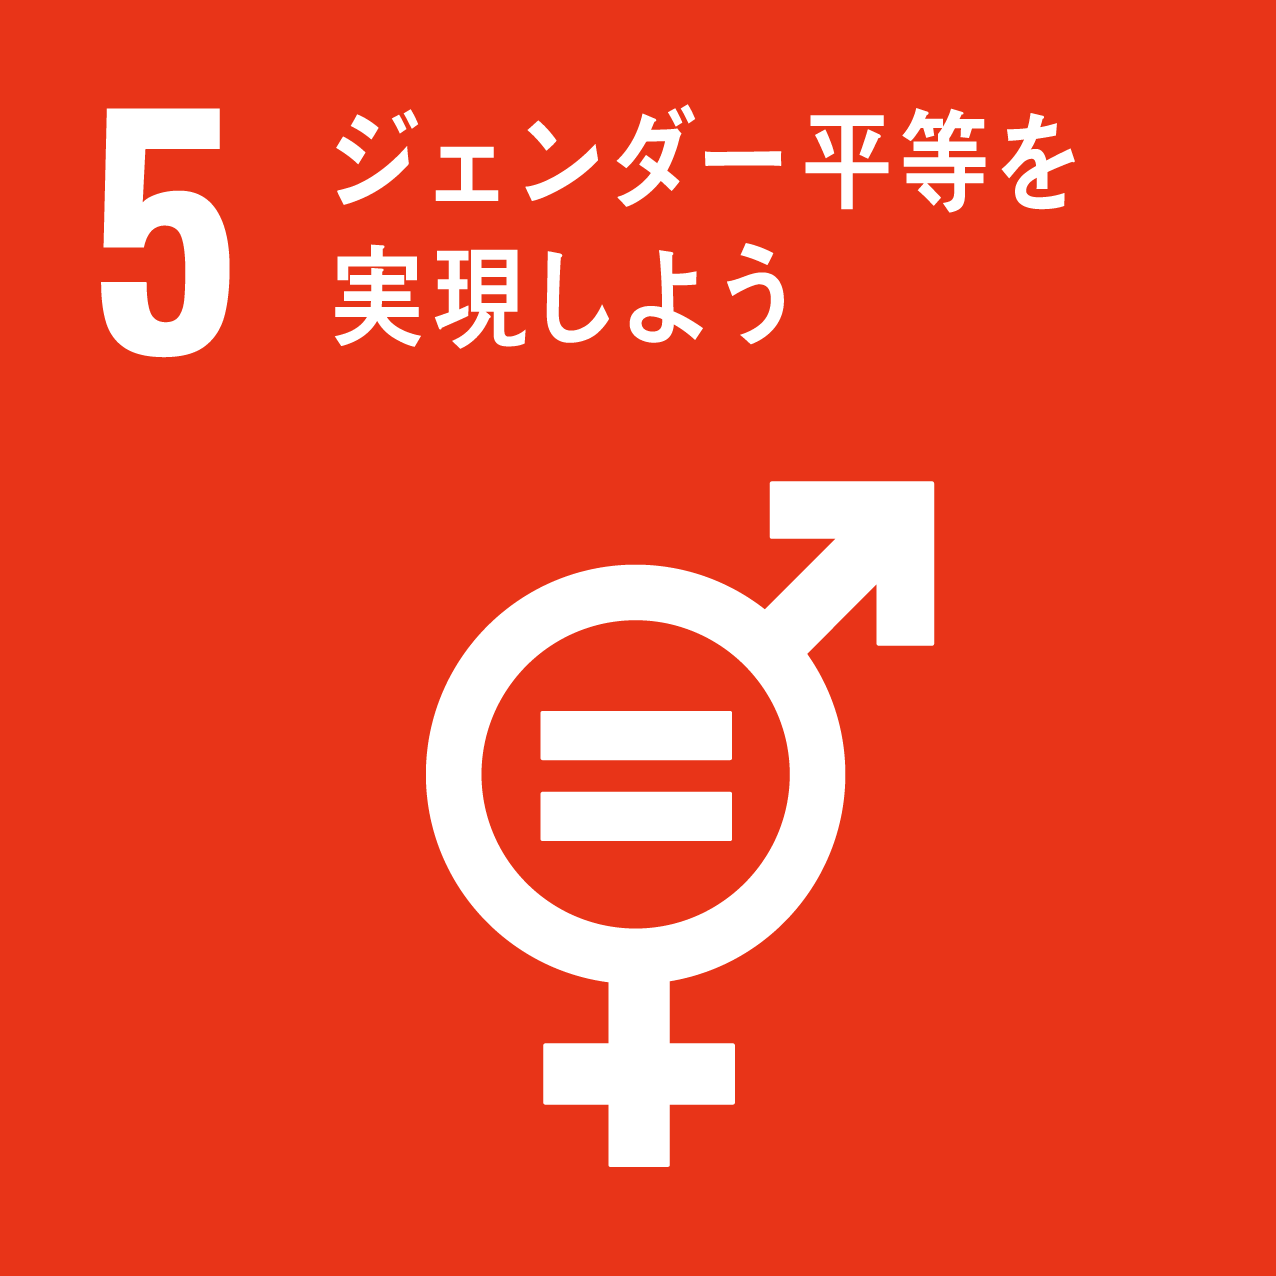 5-gender equality